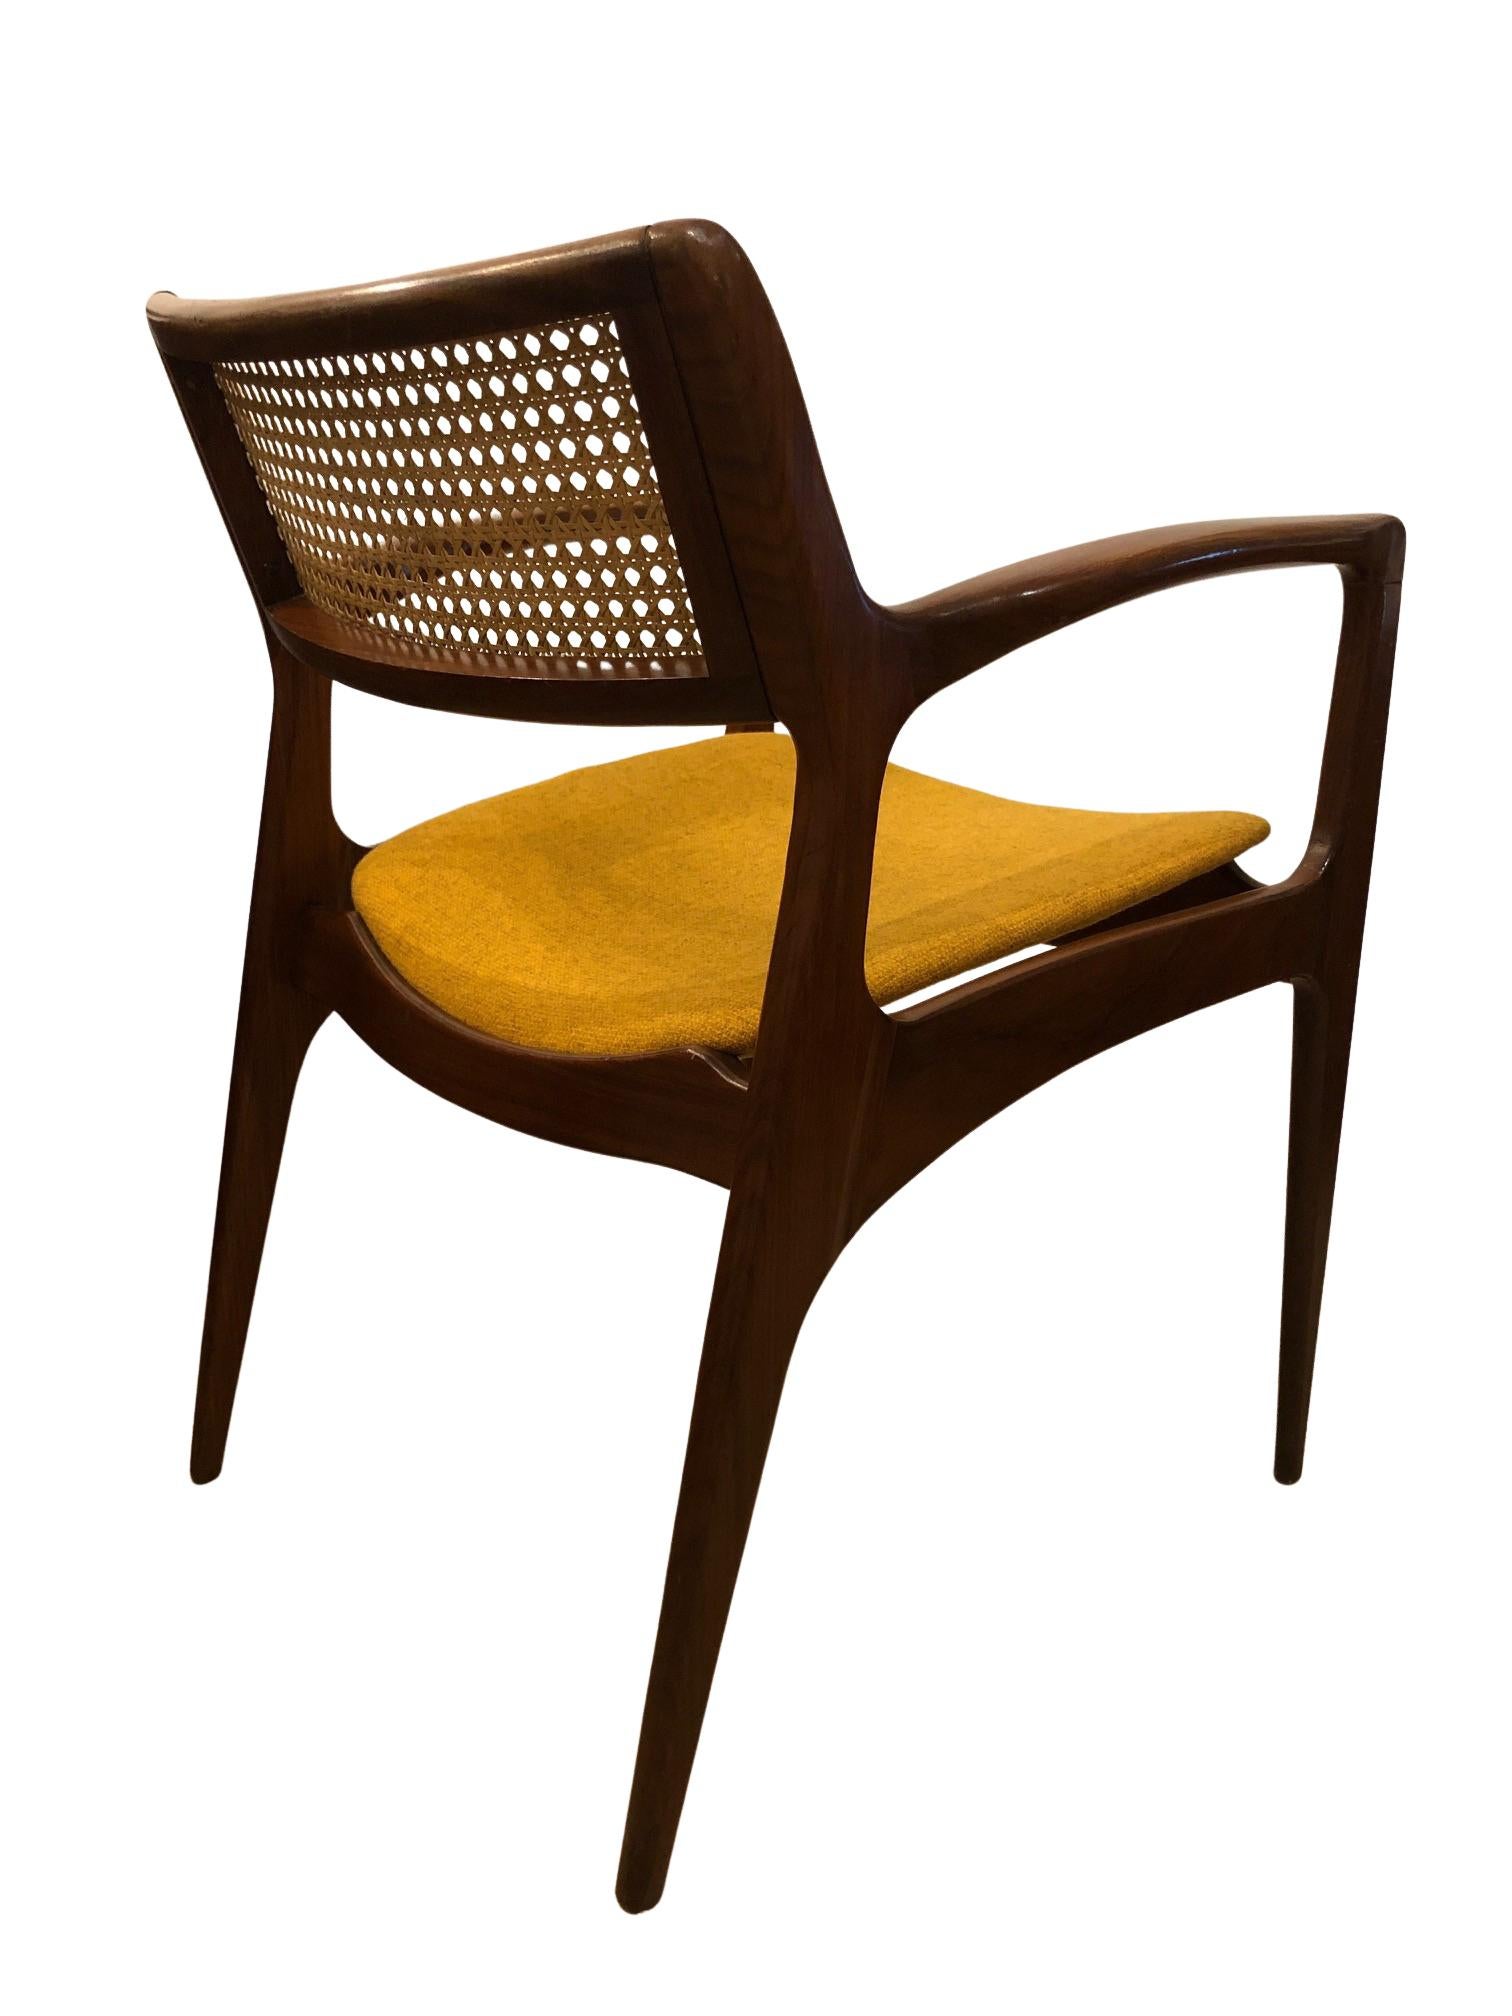 Der Stuhlsatz, Modell GFM-120, ist auf dem antiquarischen Markt äußerst selten. 

Er wurde von Edmund Homa entworfen und in den 1960er Jahren von der Möbelfabrik Goscinska in Polen hergestellt. Professor Edmund Homa war ein polnischer Architekt,